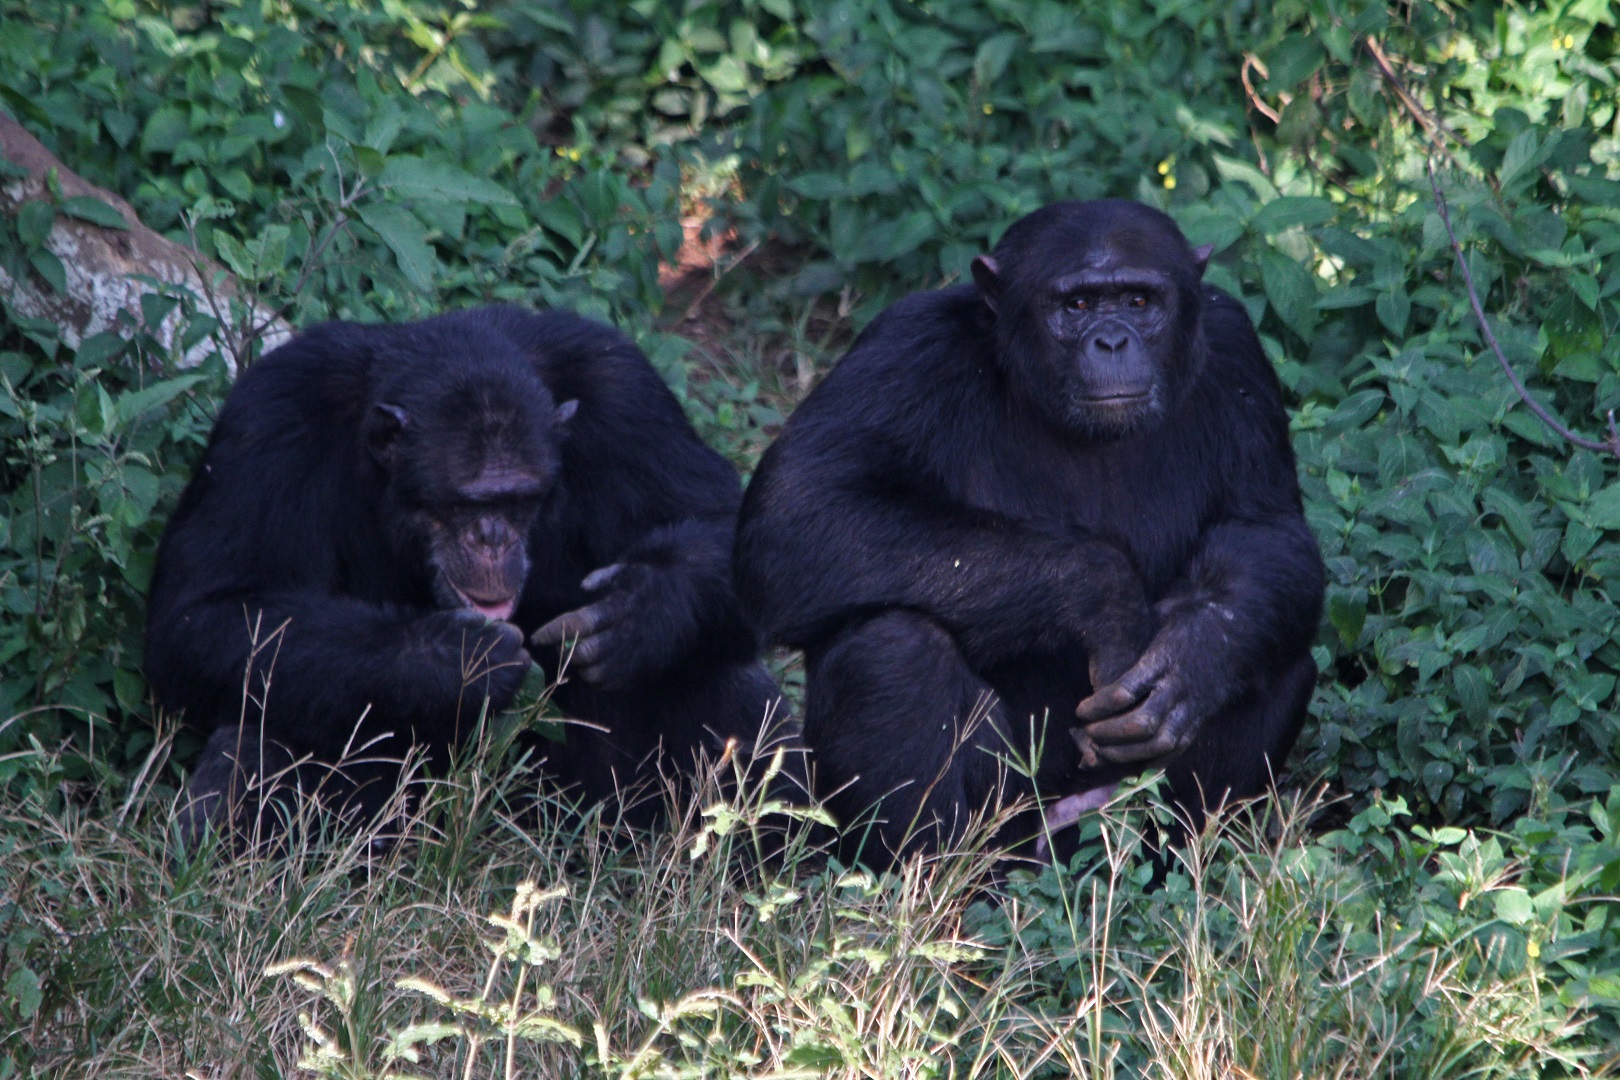 A chimpanzee couple relaxing